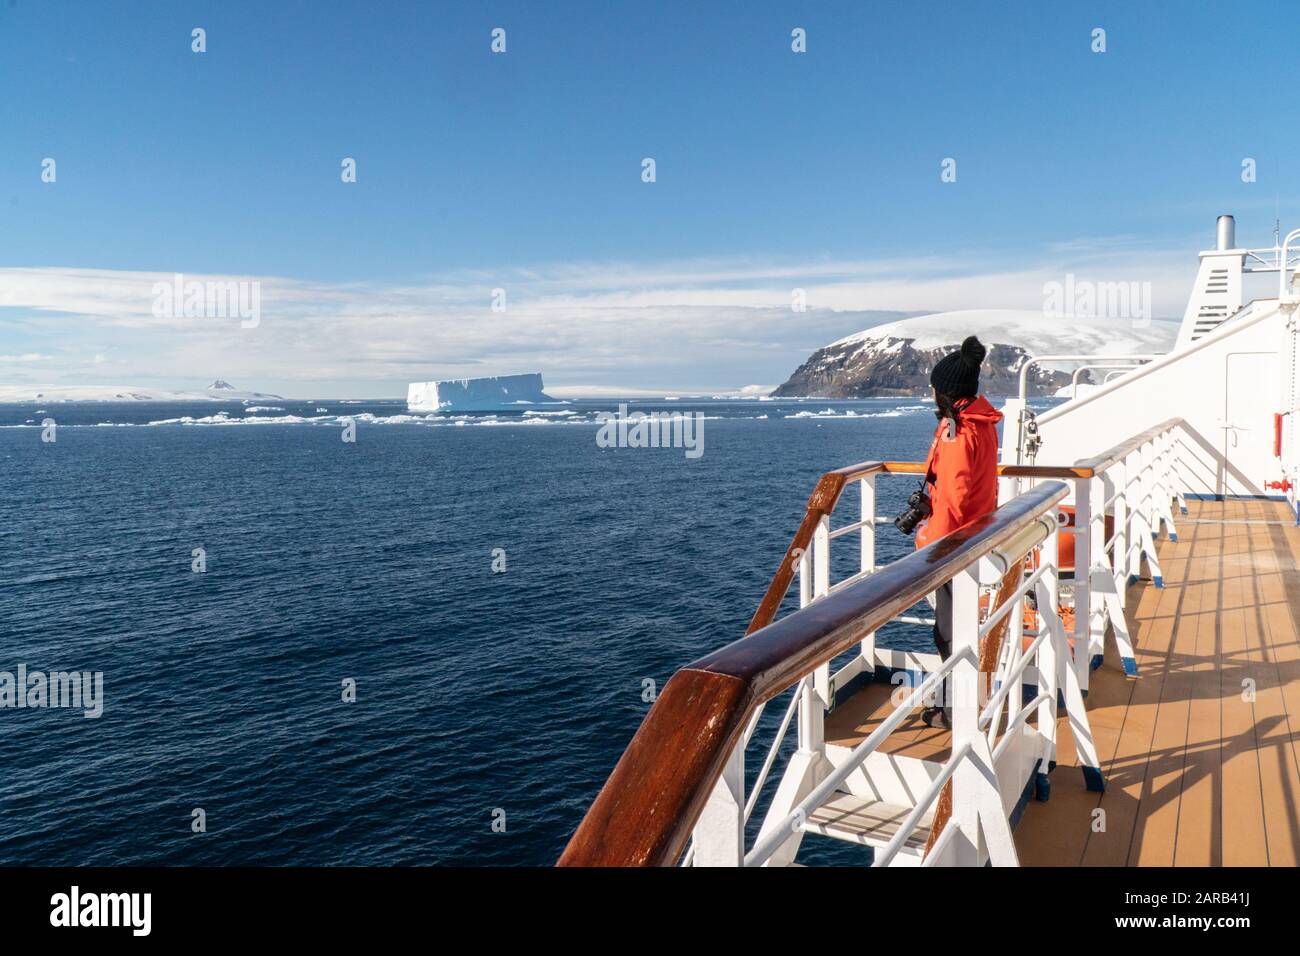 Nave da crociera per passeggeri antartici al largo delle coste ghiacciate dell'Antartide (Ocean Diamond Quark Expeditions) Foto Stock